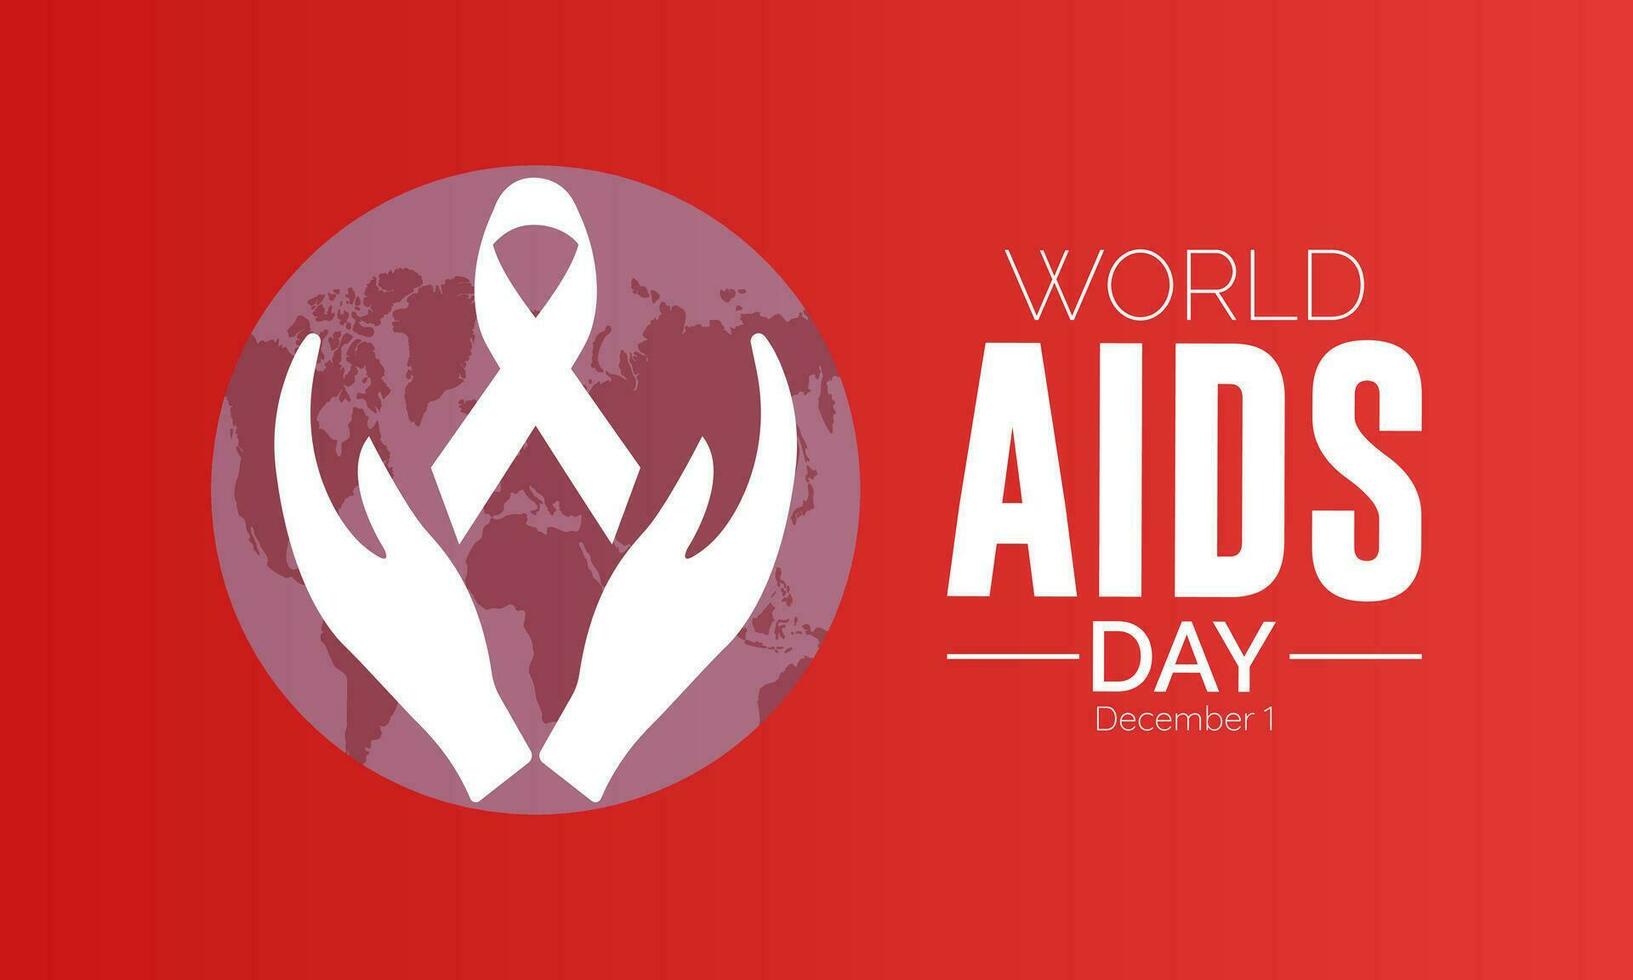 mondo AIDS giorno consapevolezza sfondo rosso bandiera nastro e globale supporto vettore illustrazione. sfondo, striscione, carta, manifesto design.